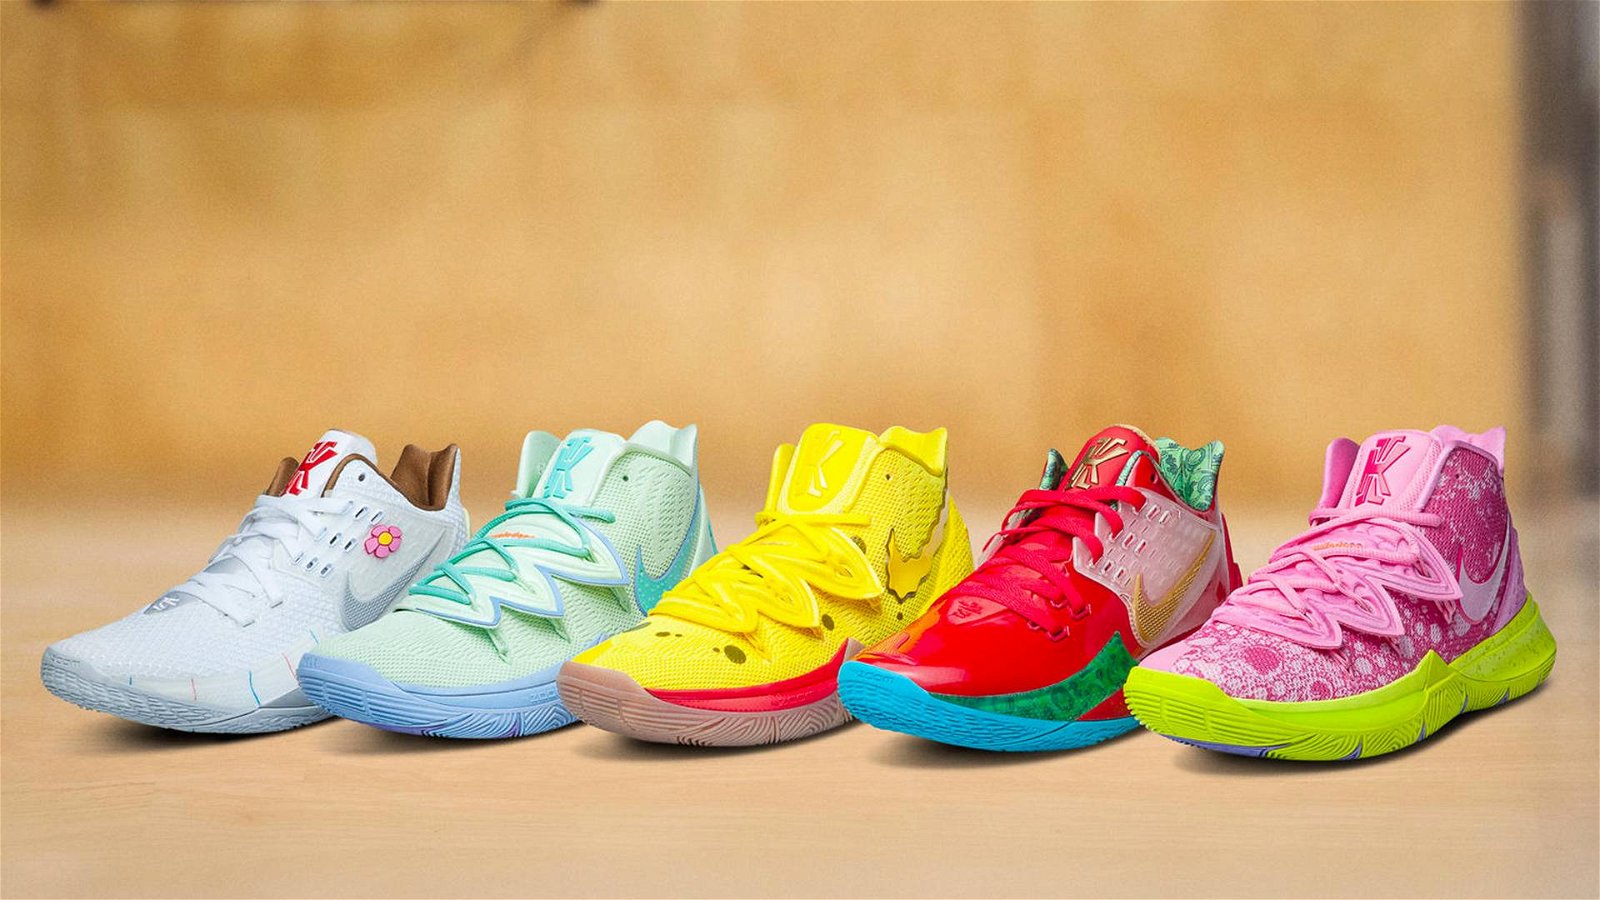 Immagine di Nike celebra i 20 anni di Spongebob con una collezione di sneakers